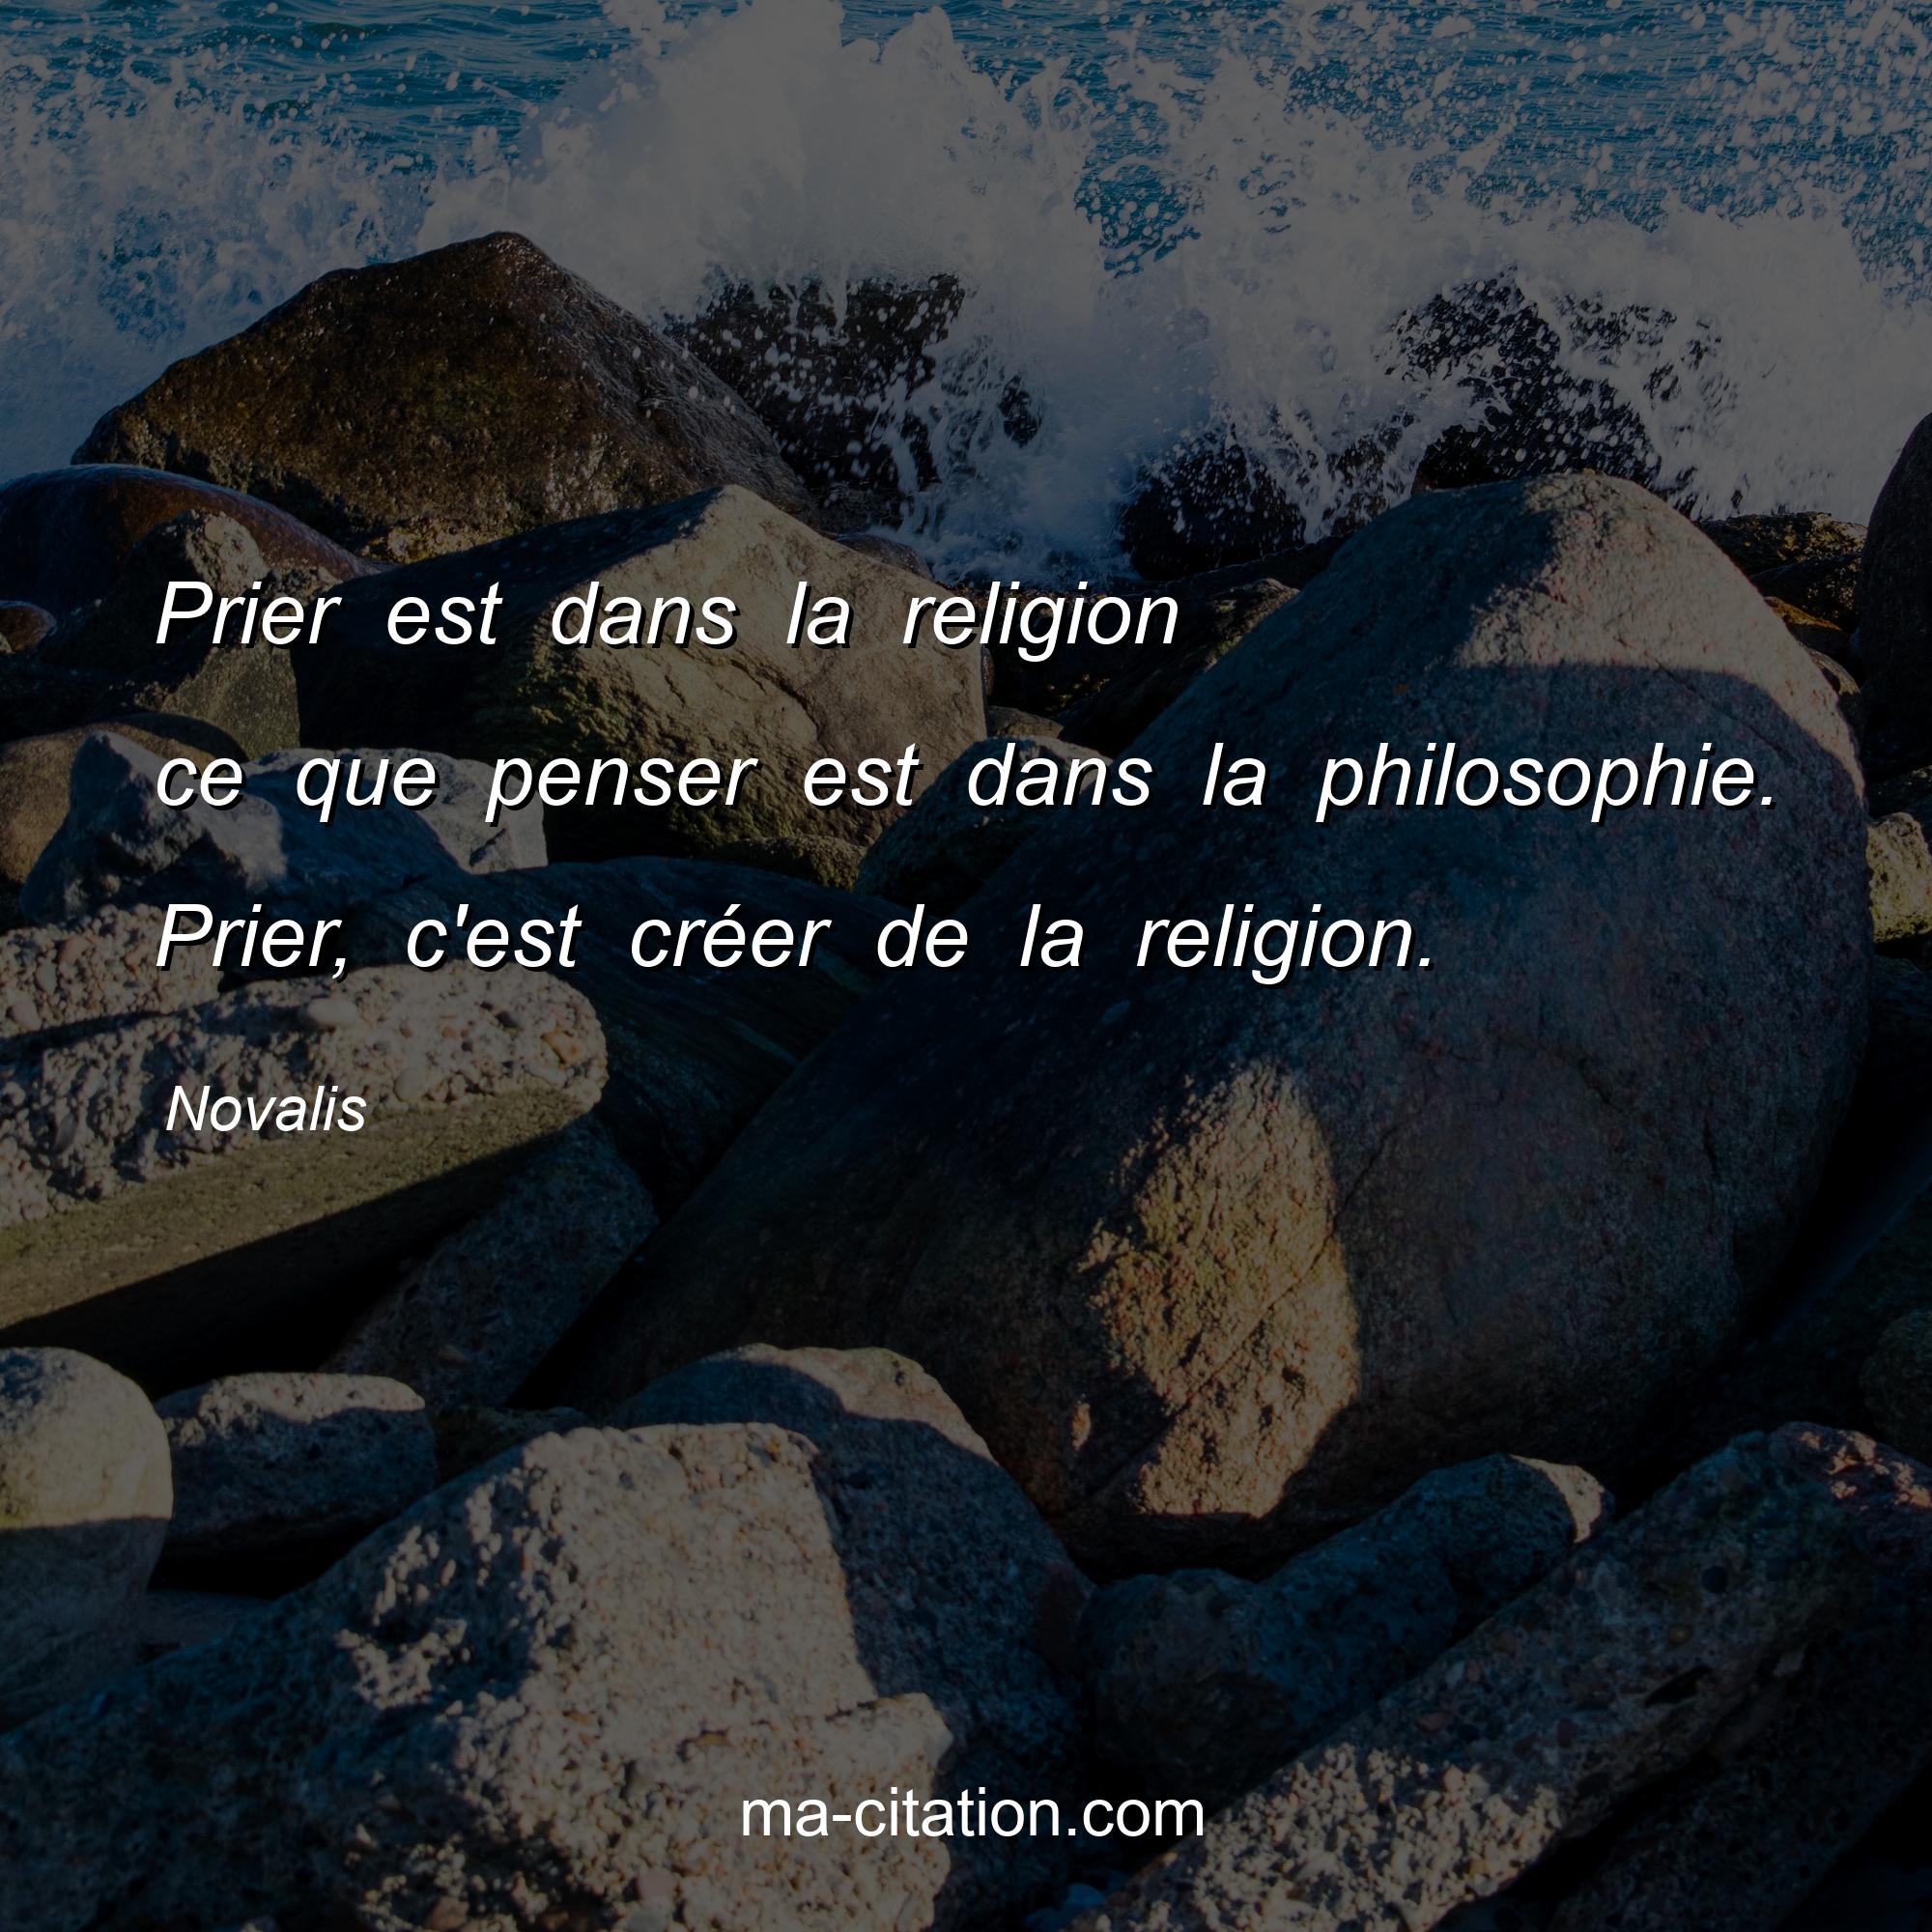 Novalis : Prier est dans la religion ce que penser est dans la philosophie. Prier, c'est créer de la religion.